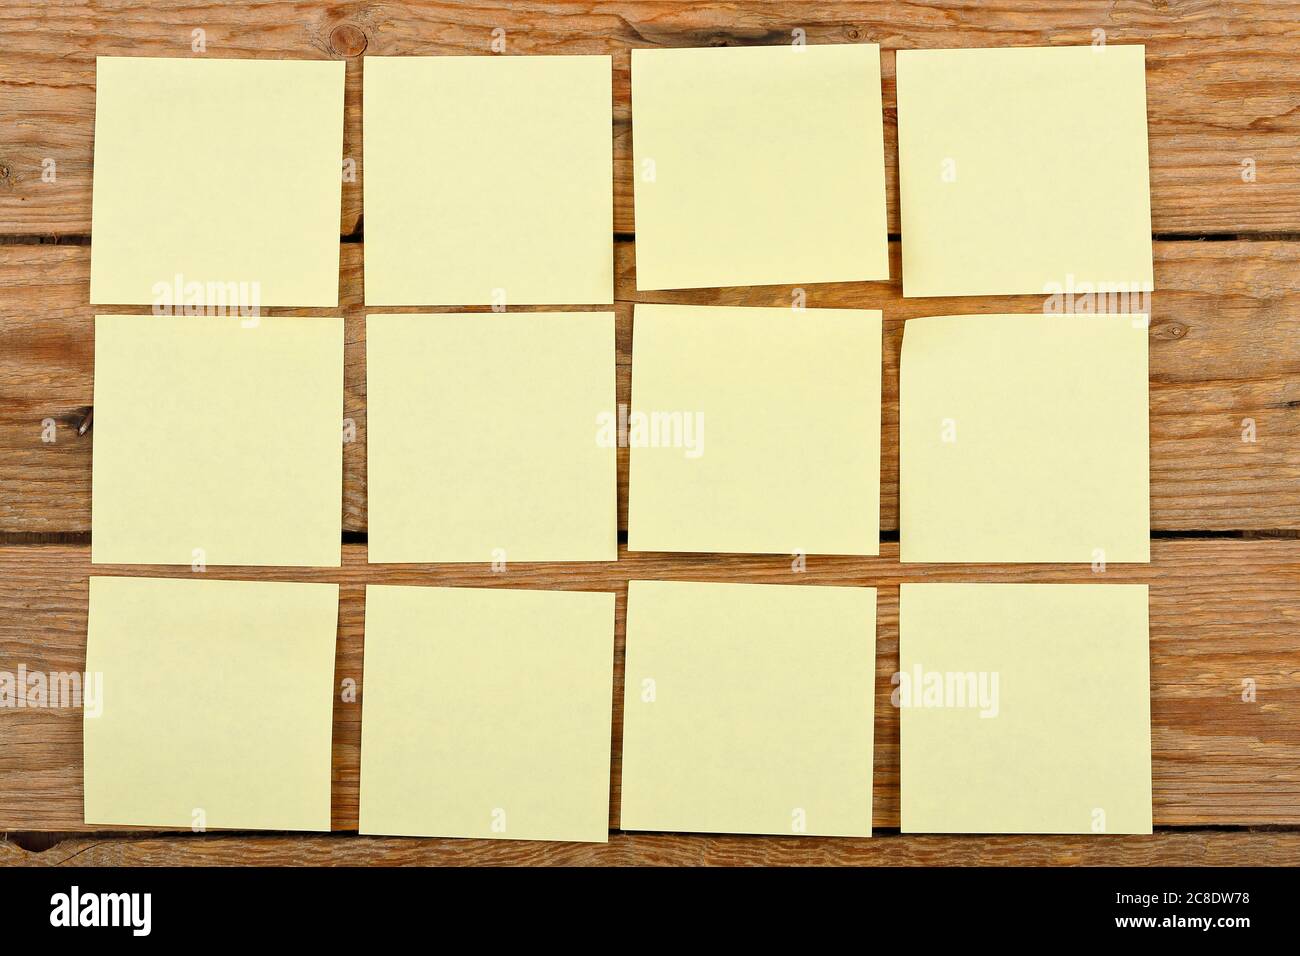 douze notes jaunes sur des planches en bois Banque D'Images